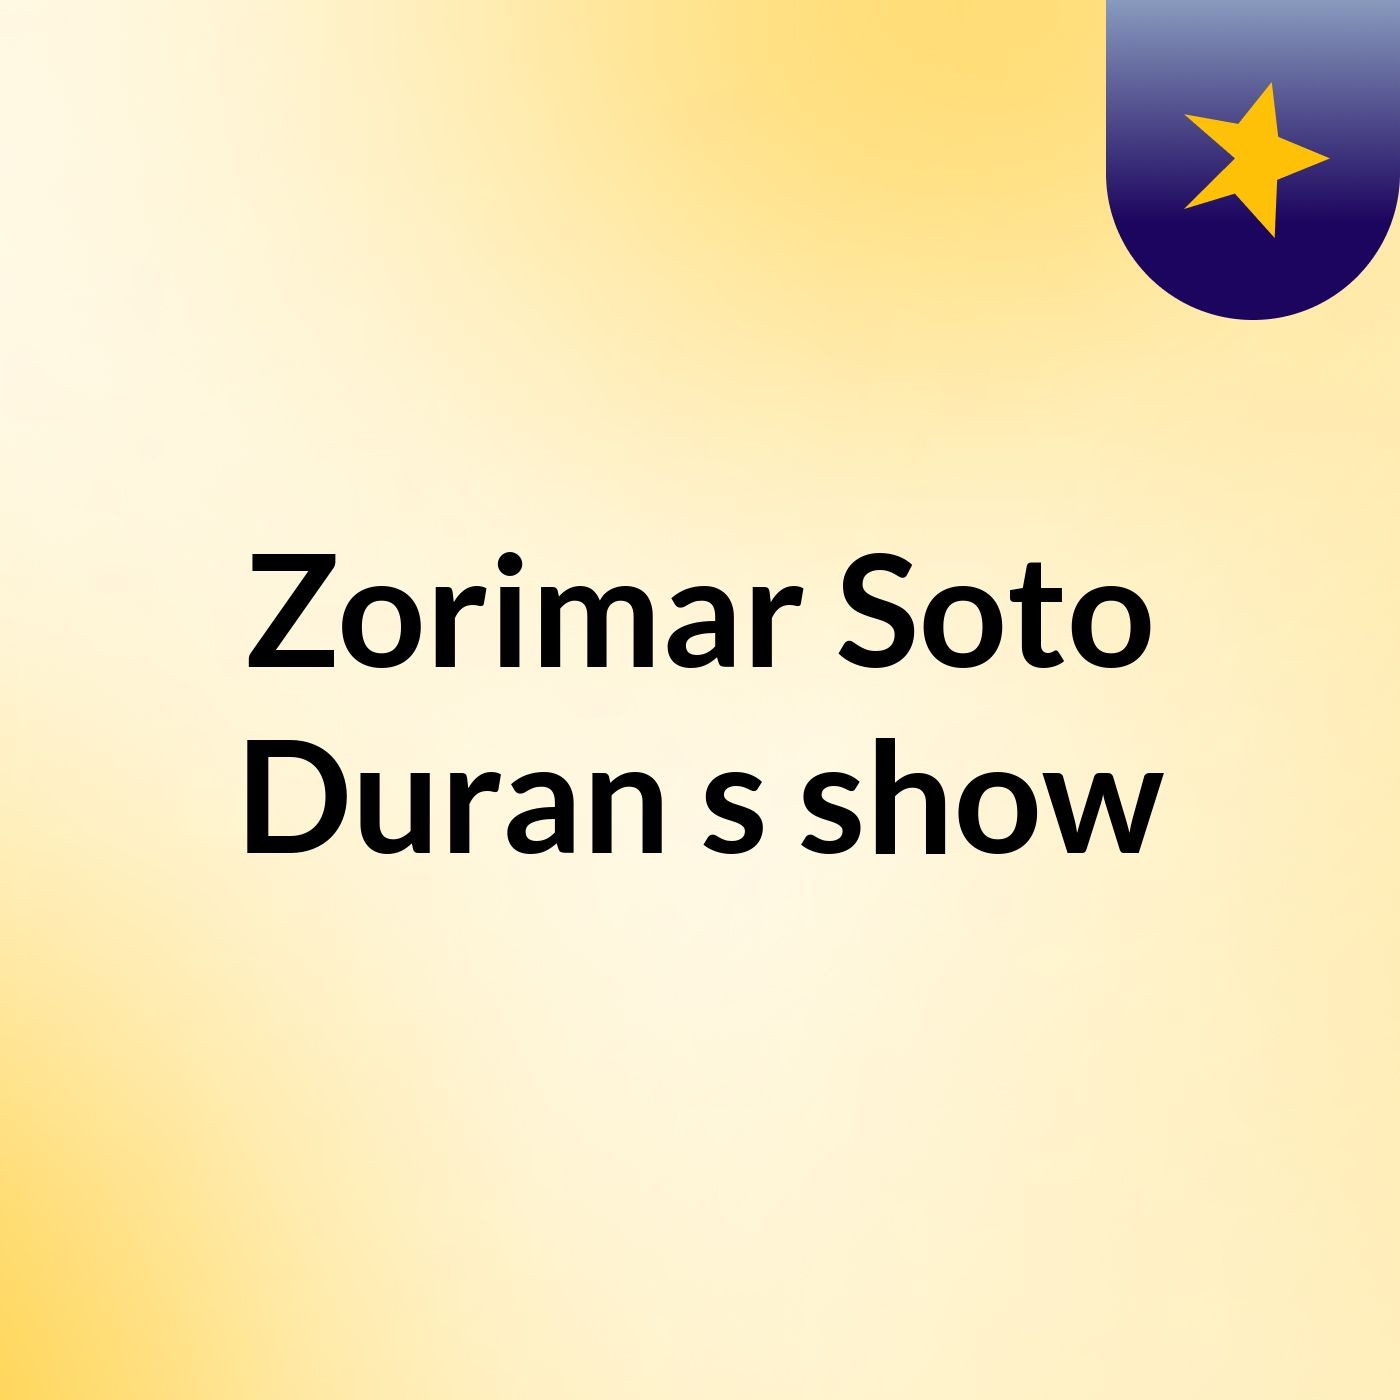 Zorimar Soto Duran's show